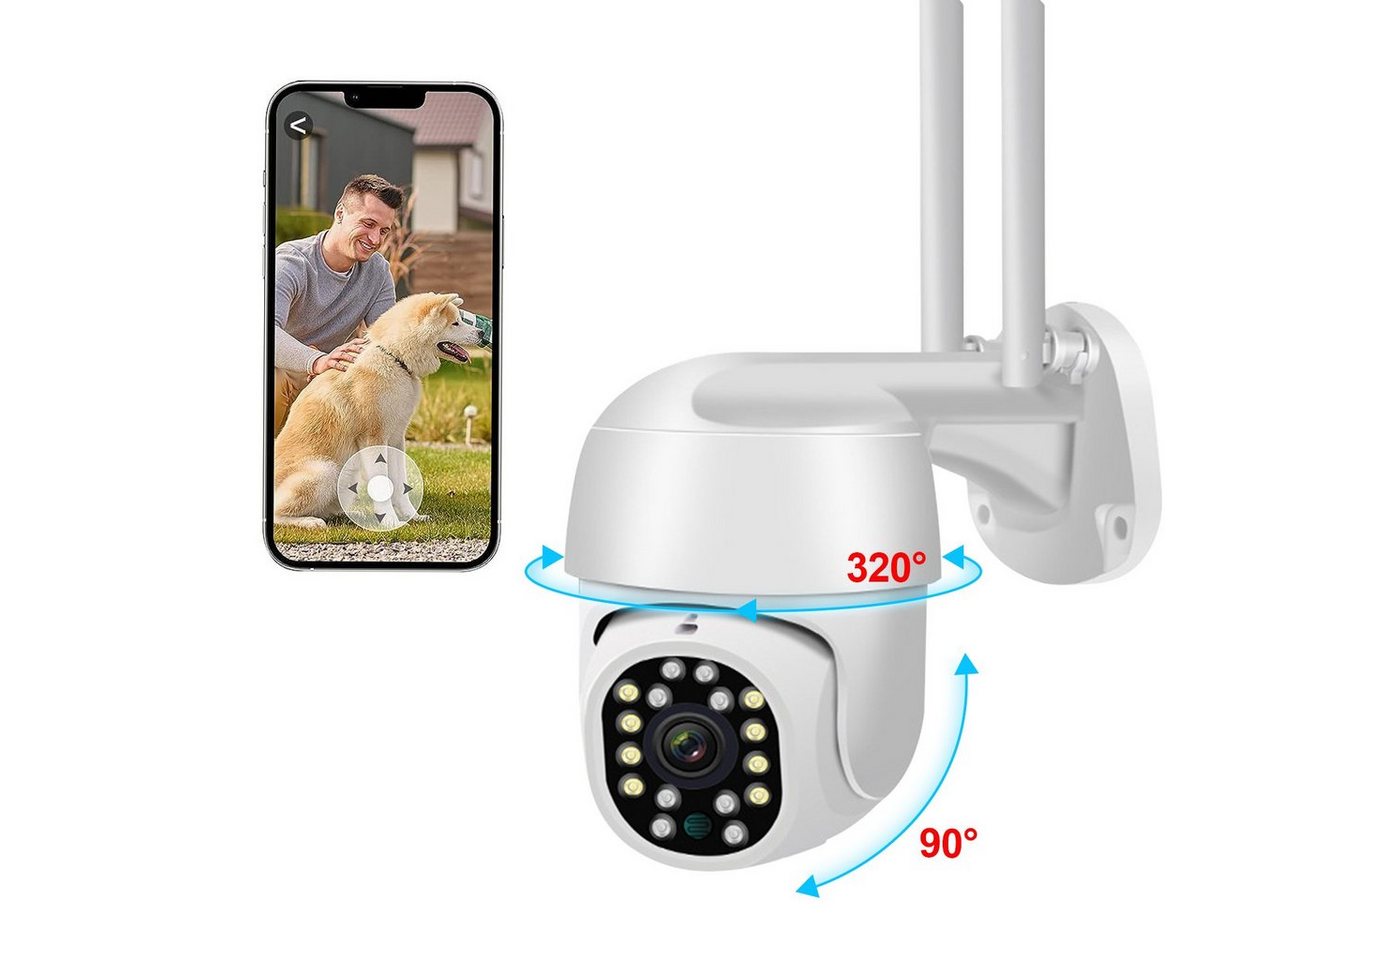 Kpaloft 5G-Dualband-WLAN Überwachungskamera (für Innen/Außen, FHD 1080P Kamera, 320°/90° verstellbar, Nachtsicht, Bewegungserkennung, APP, Zwei-Wege-Audio, Ton- und Lichtwarnung, für Wohnzimmer/Hof/Lager/Bauernhof/Garten) von Kpaloft